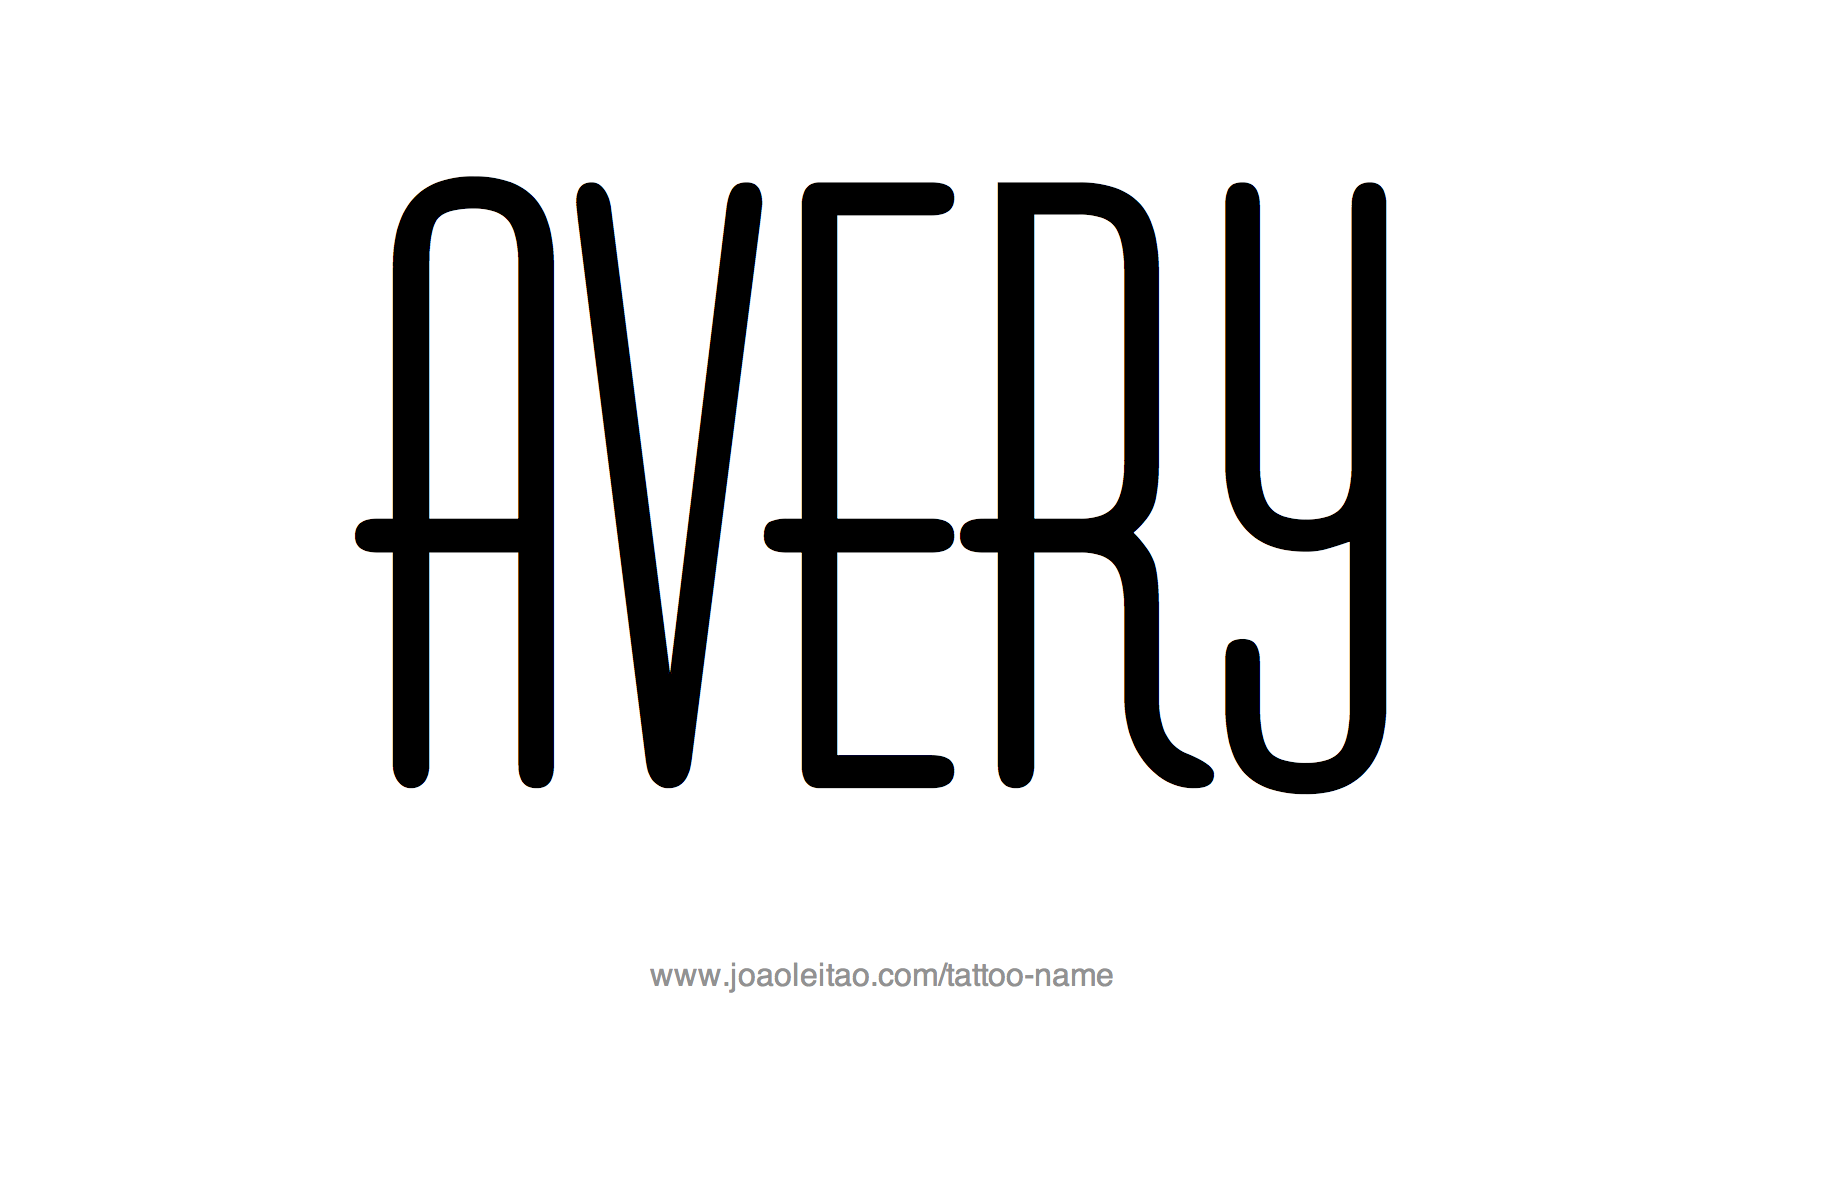 avery